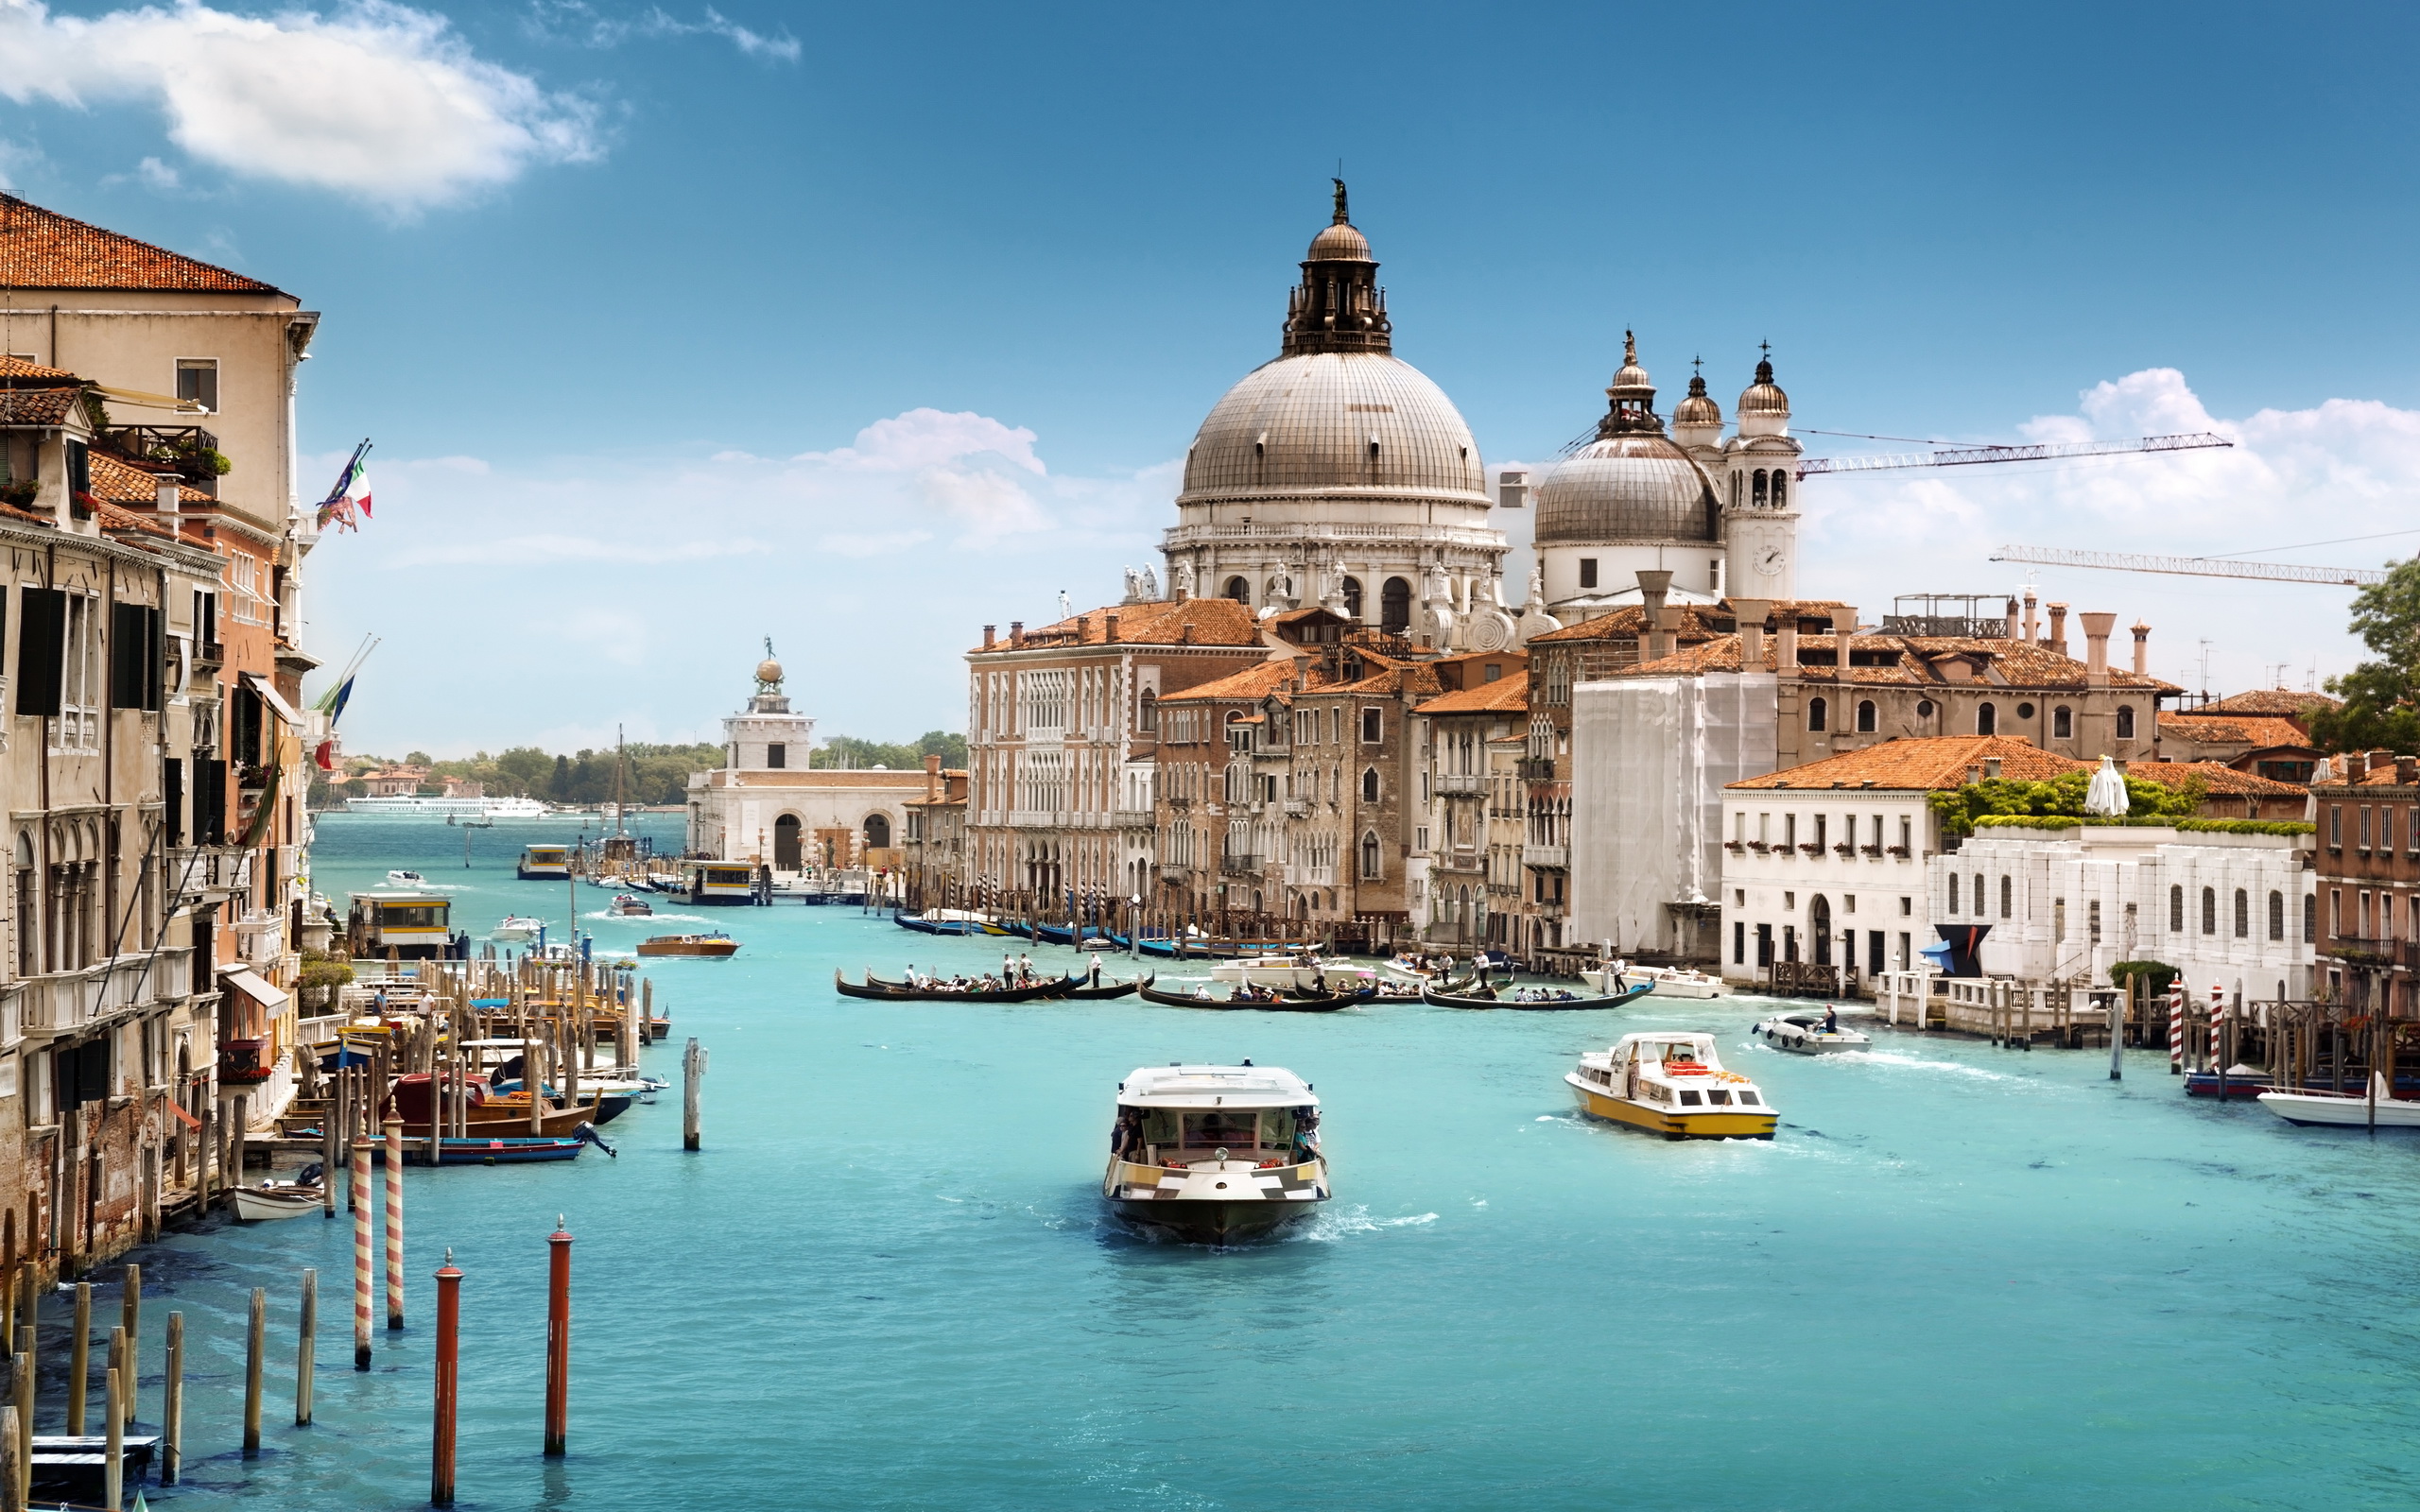 Italy - Nước Ý nổi tiếng với sự đa dạng của văn hóa, ẩm thực và kiến trúc tuyệt đẹp. Một số trong số những địa danh nổi tiếng nhất của châu Âu được tìm thấy ở đây. Hãy cùng khám phá vẻ đẹp tuyệt vời của đất nước này trong hình ảnh.